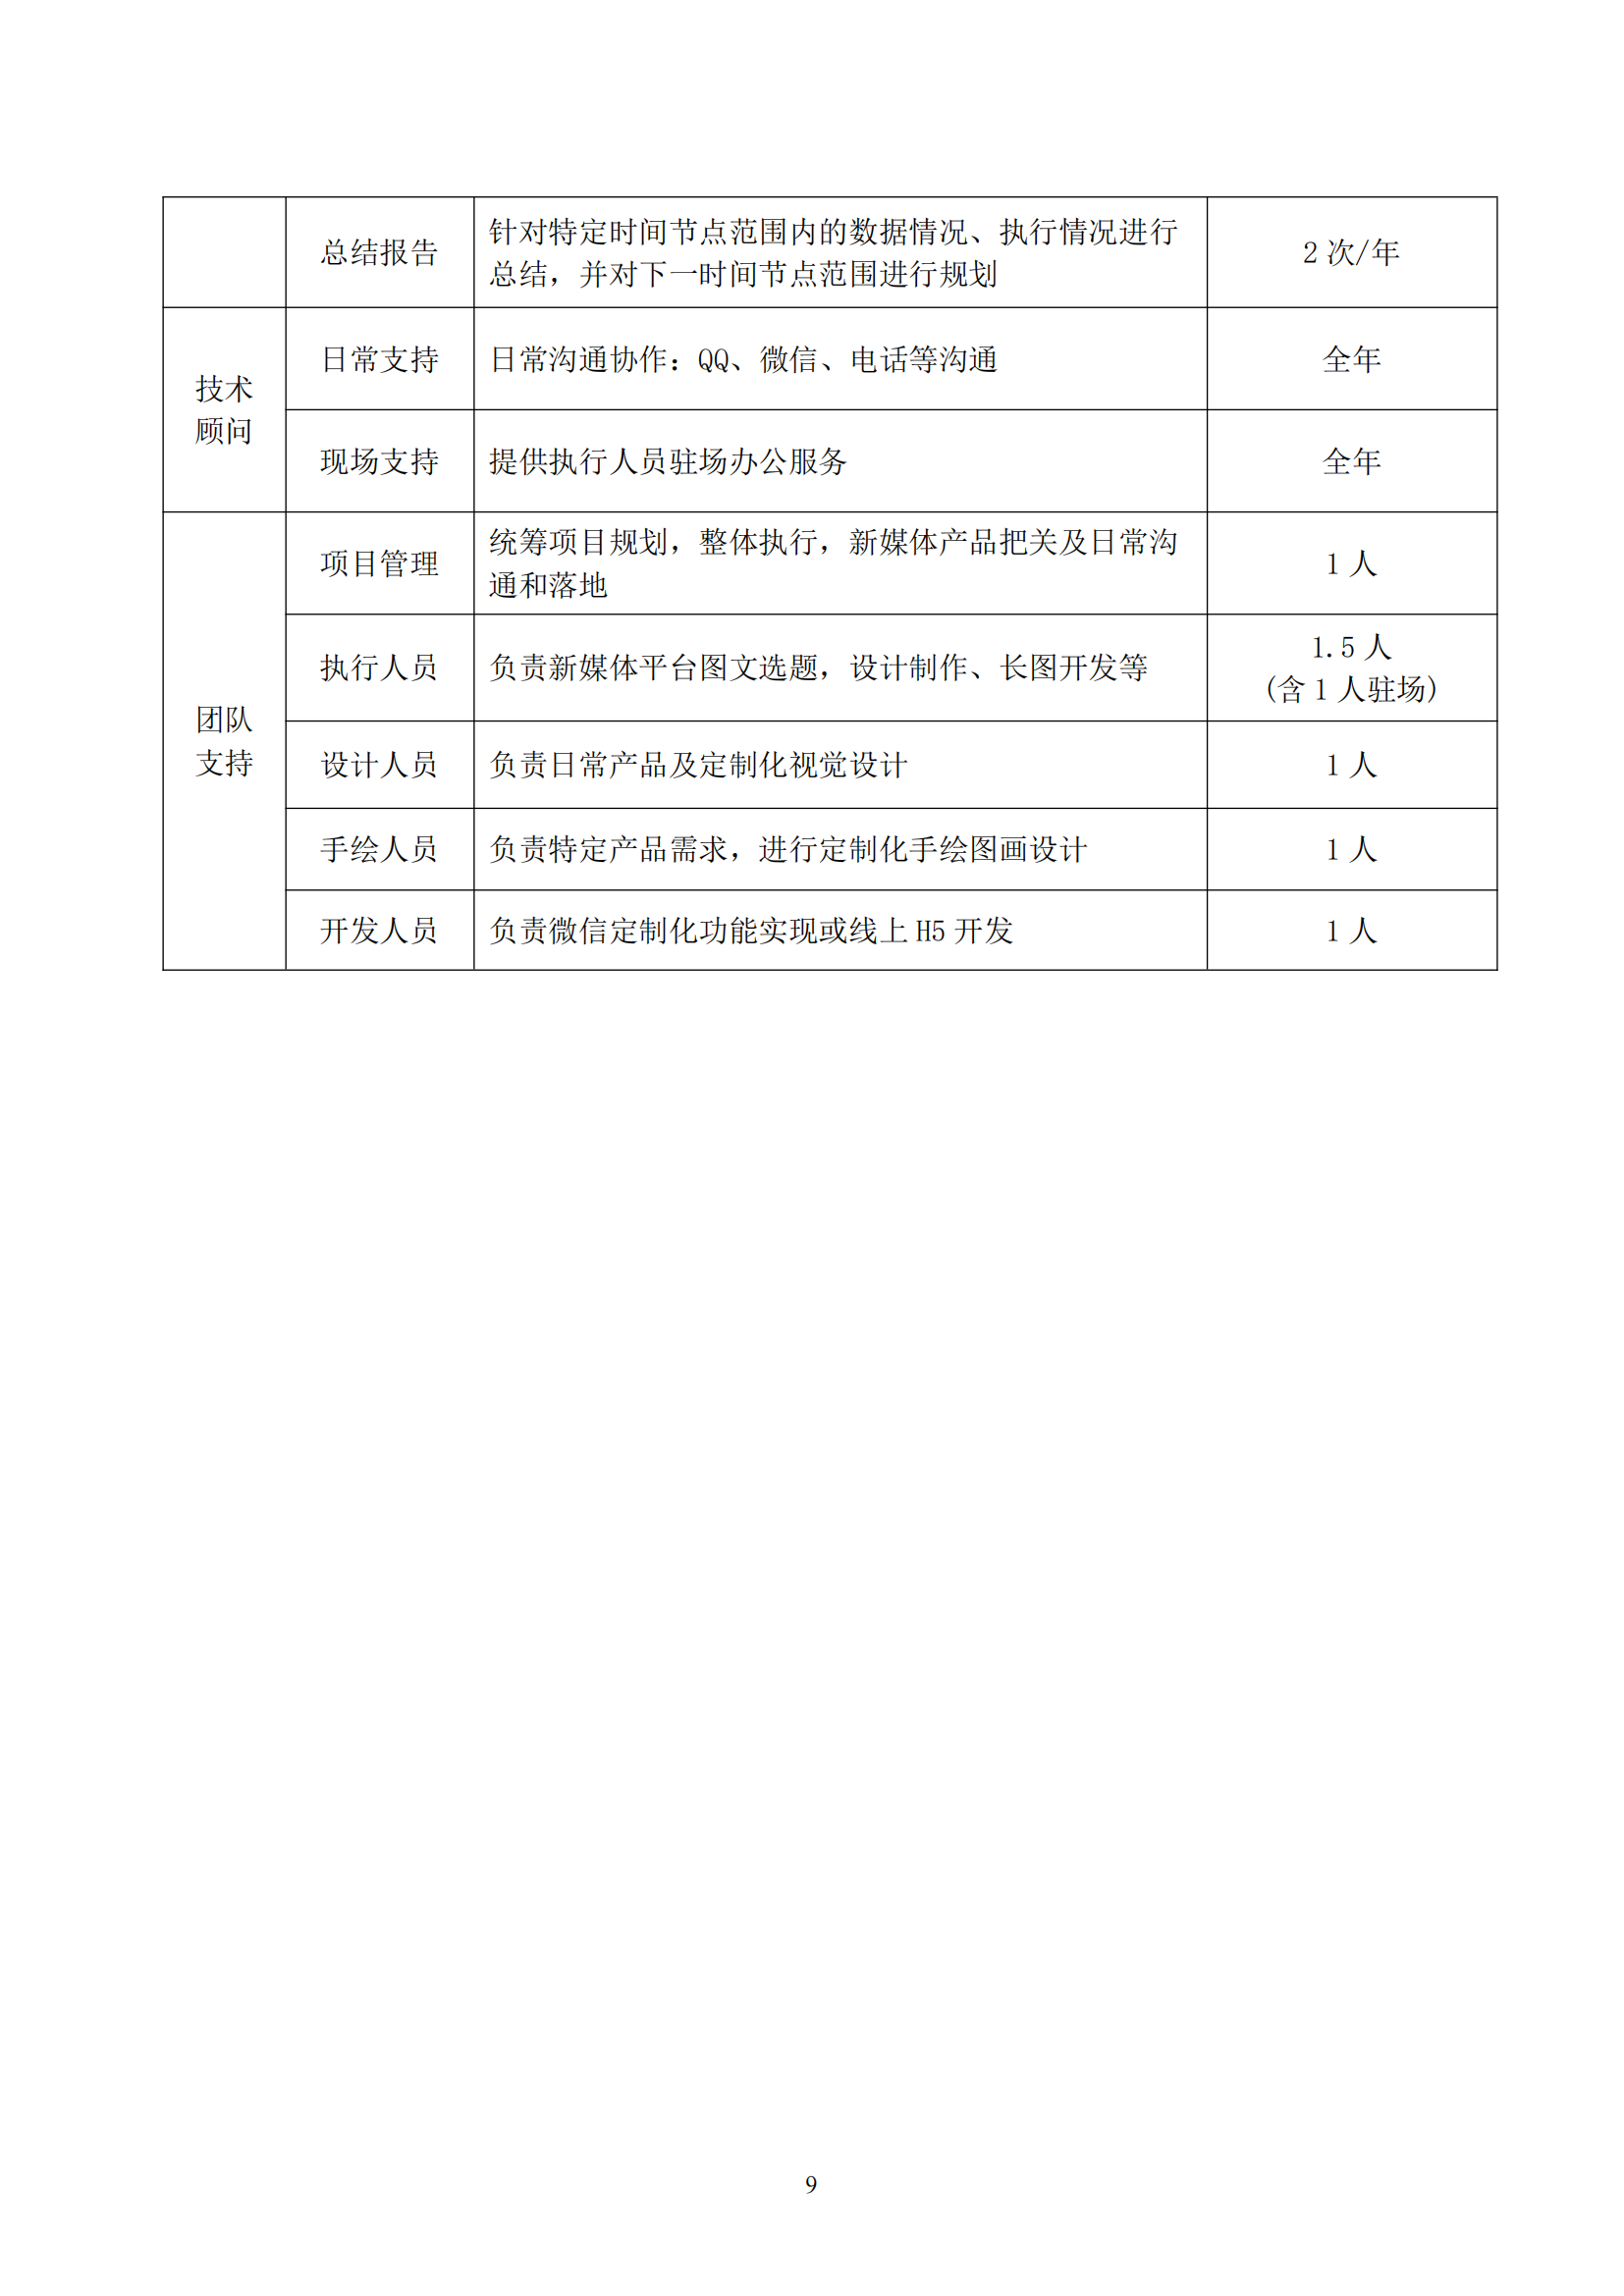 武汉妇联官方微信新媒体运维及改版升级项目合同_09.png